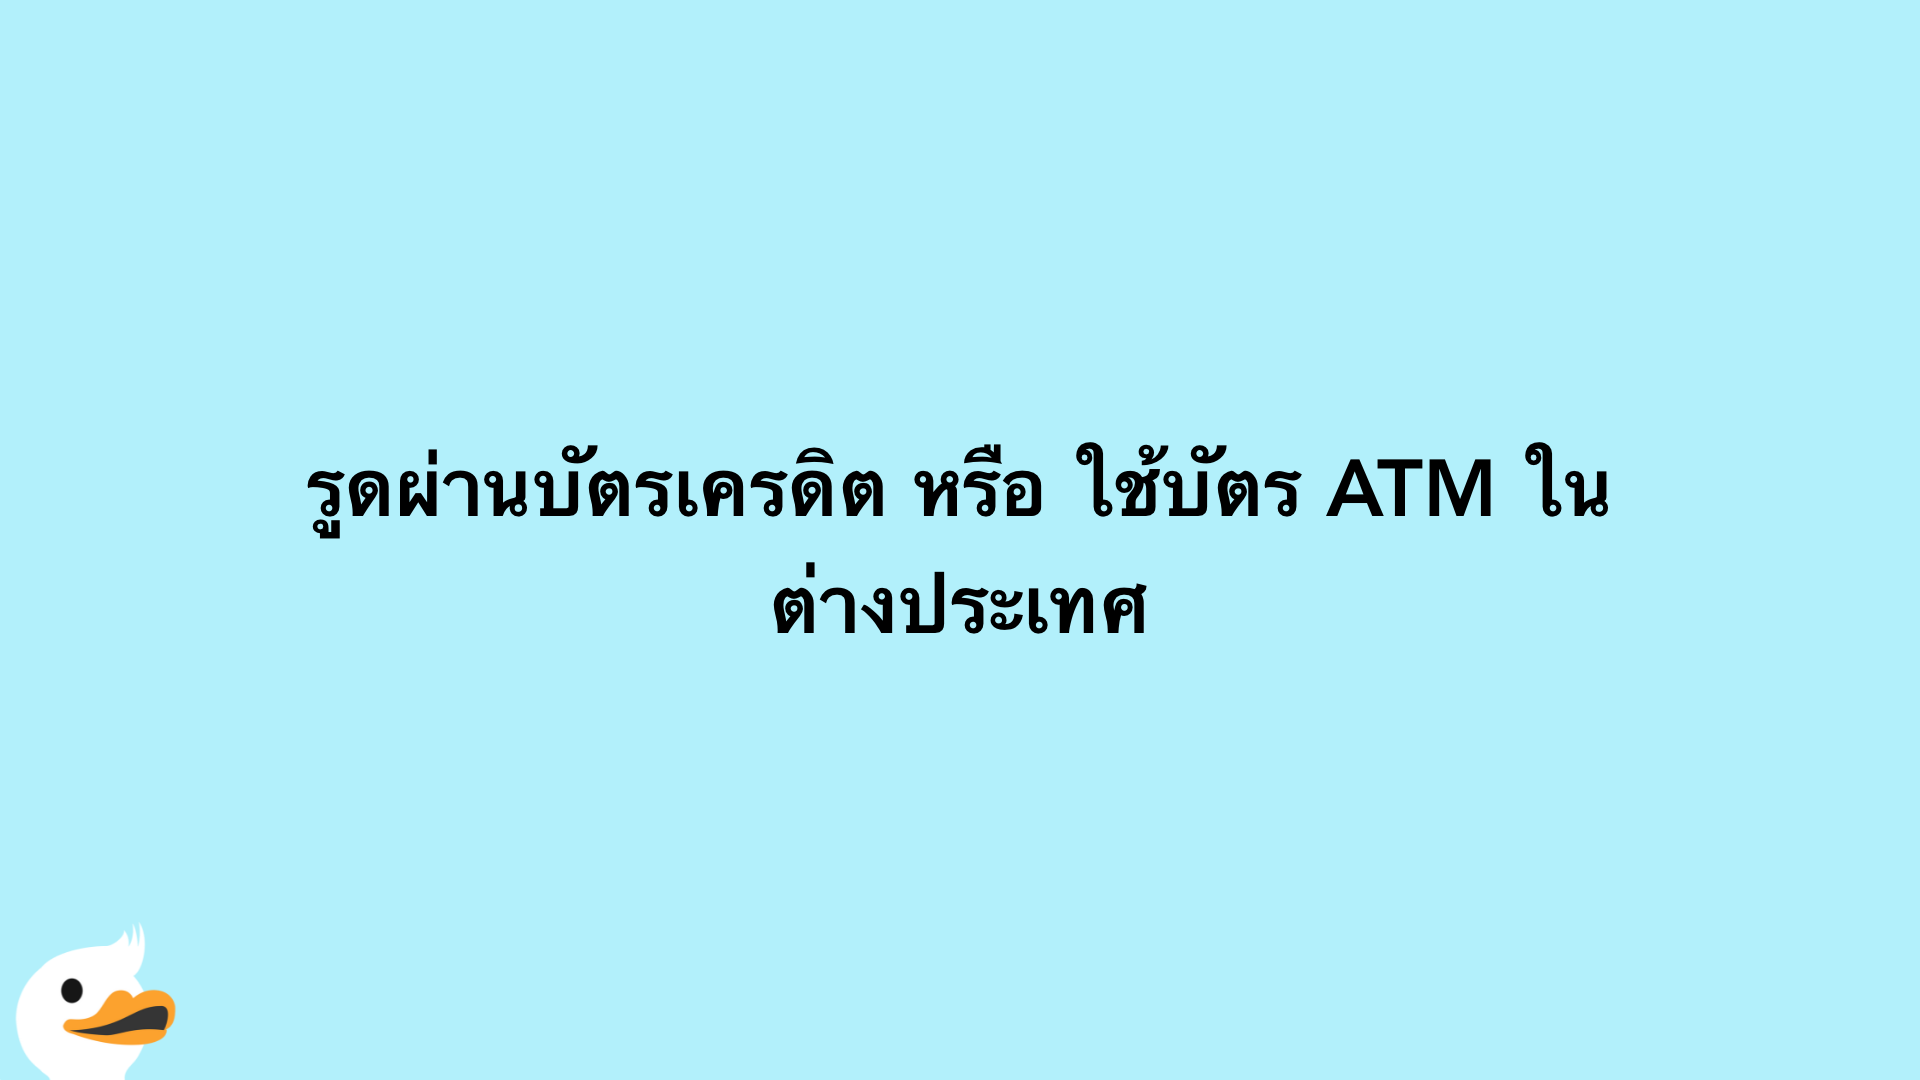 รูดผ่านบัตรเครดิต หรือ ใช้บัตร ATM ในต่างประเทศ